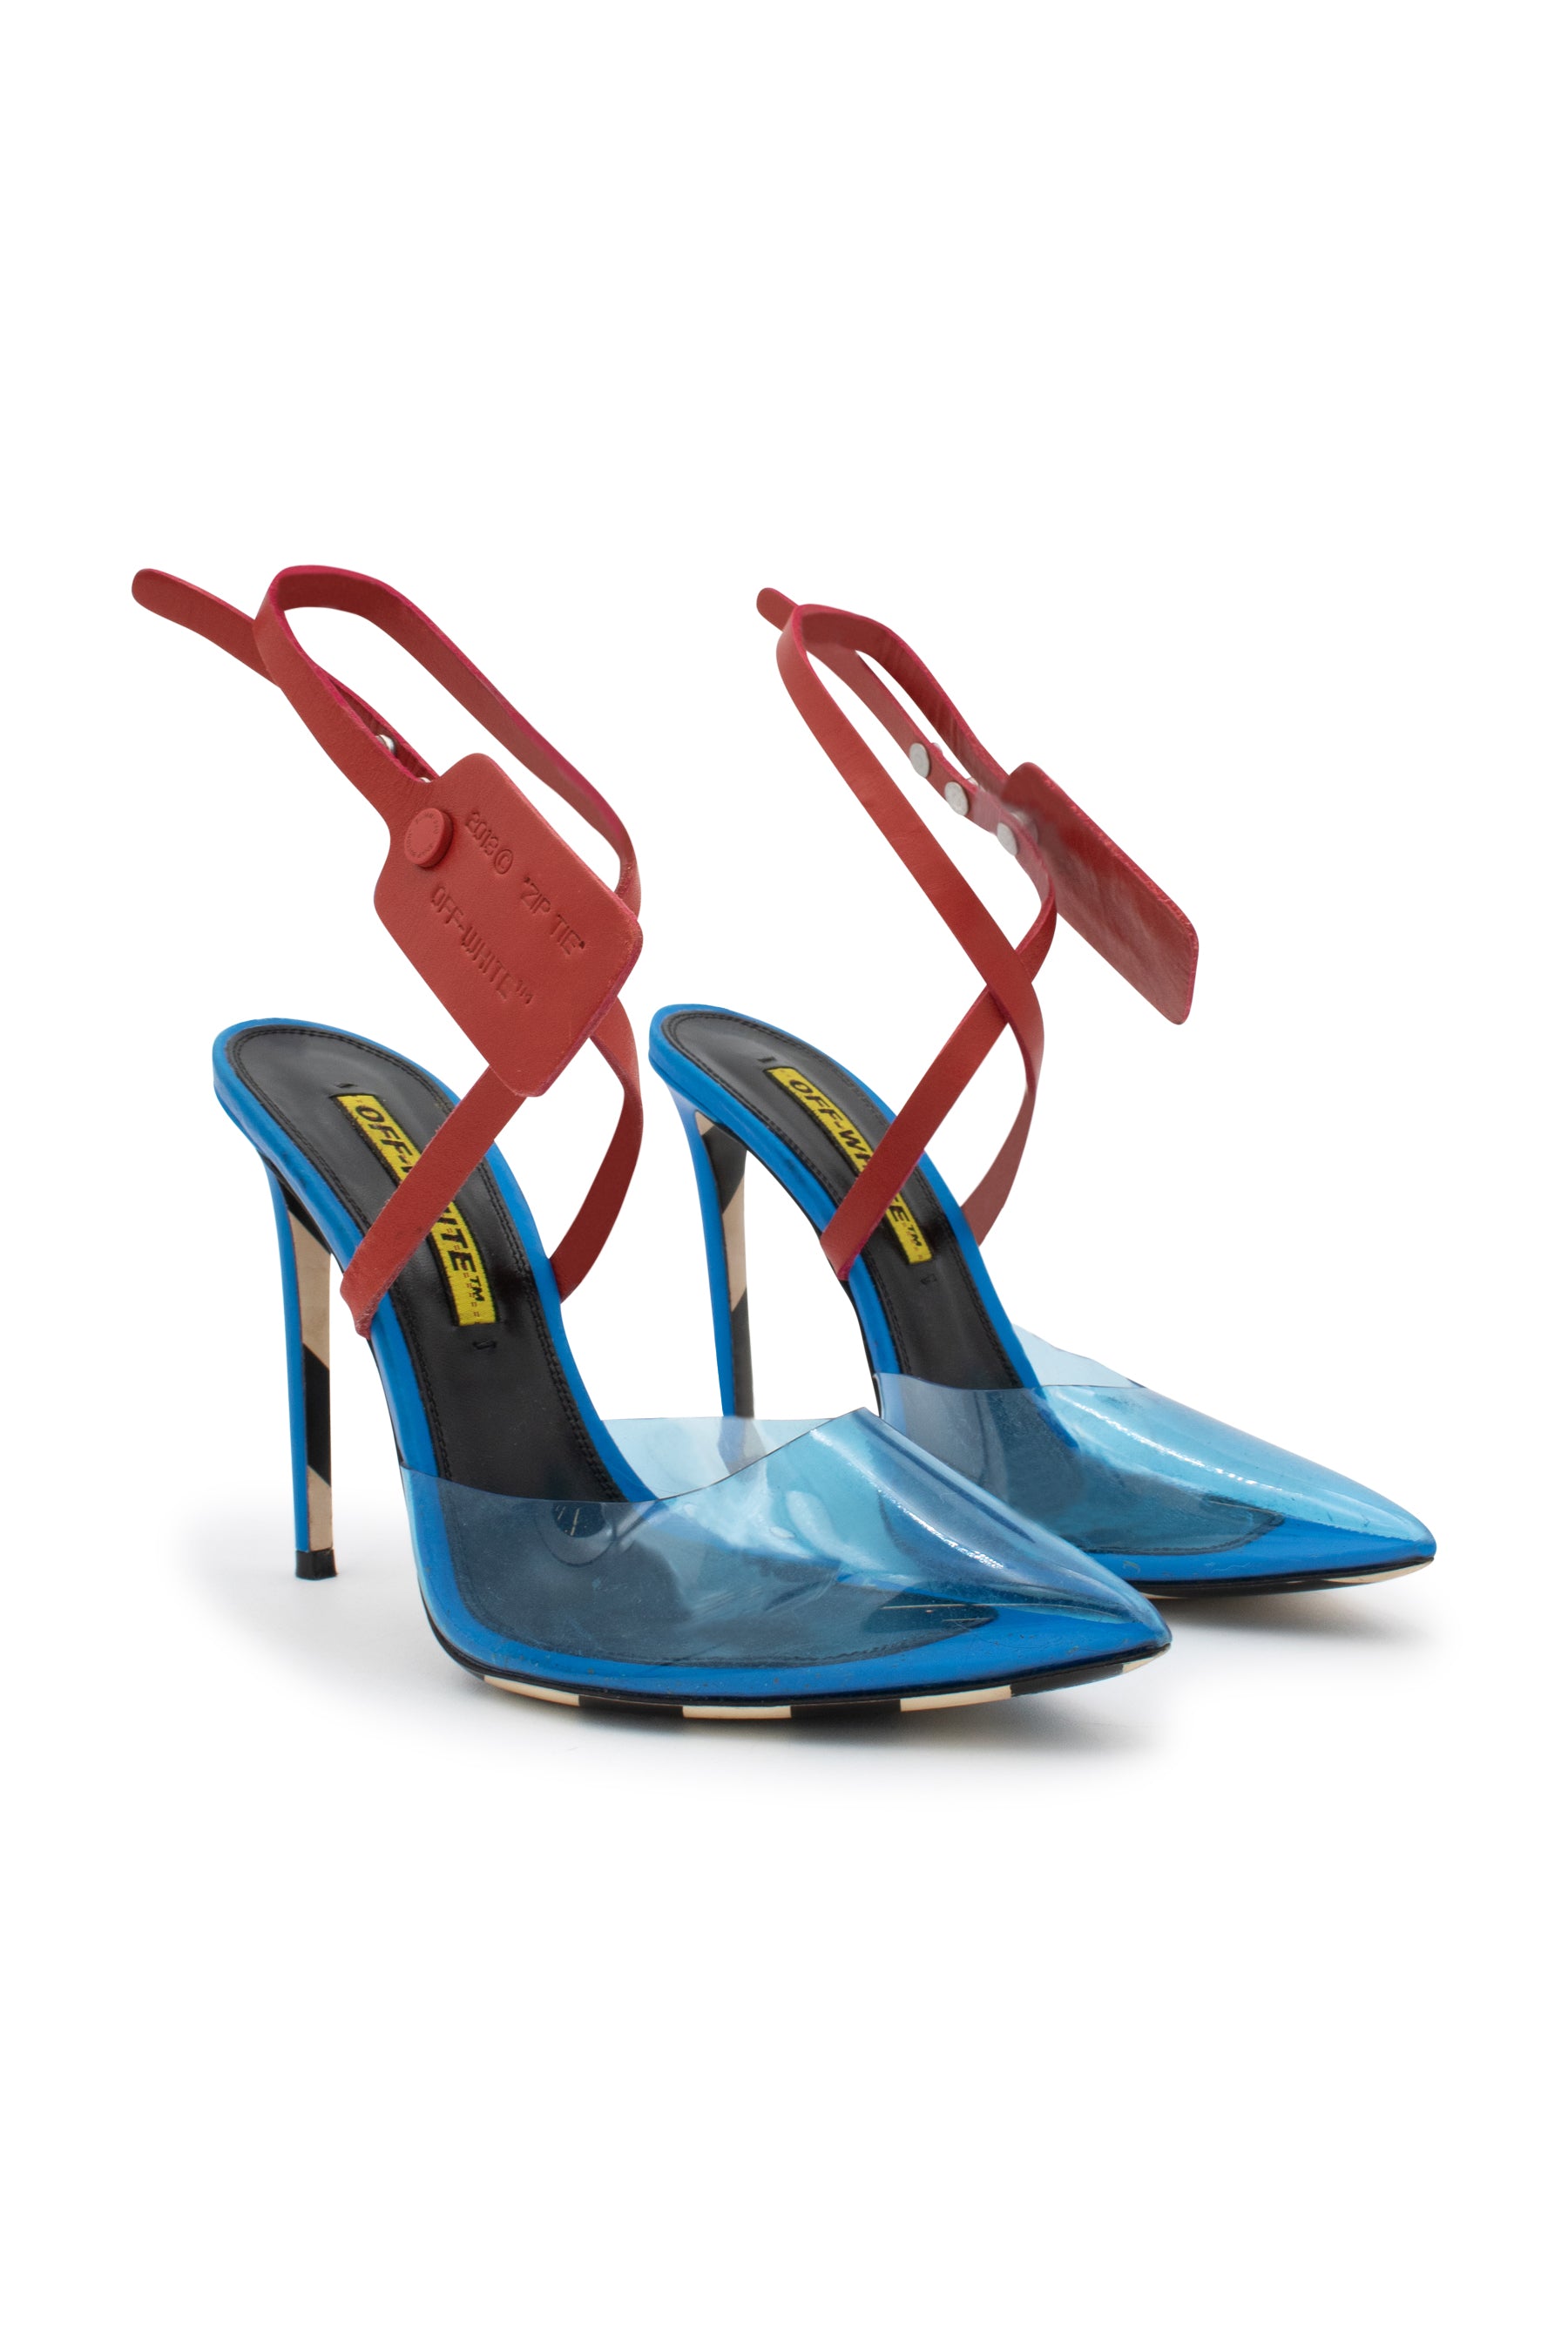 Shop Ilio Smeraldo Heeled sandals by Giulia De Lellis - black on Rinascente